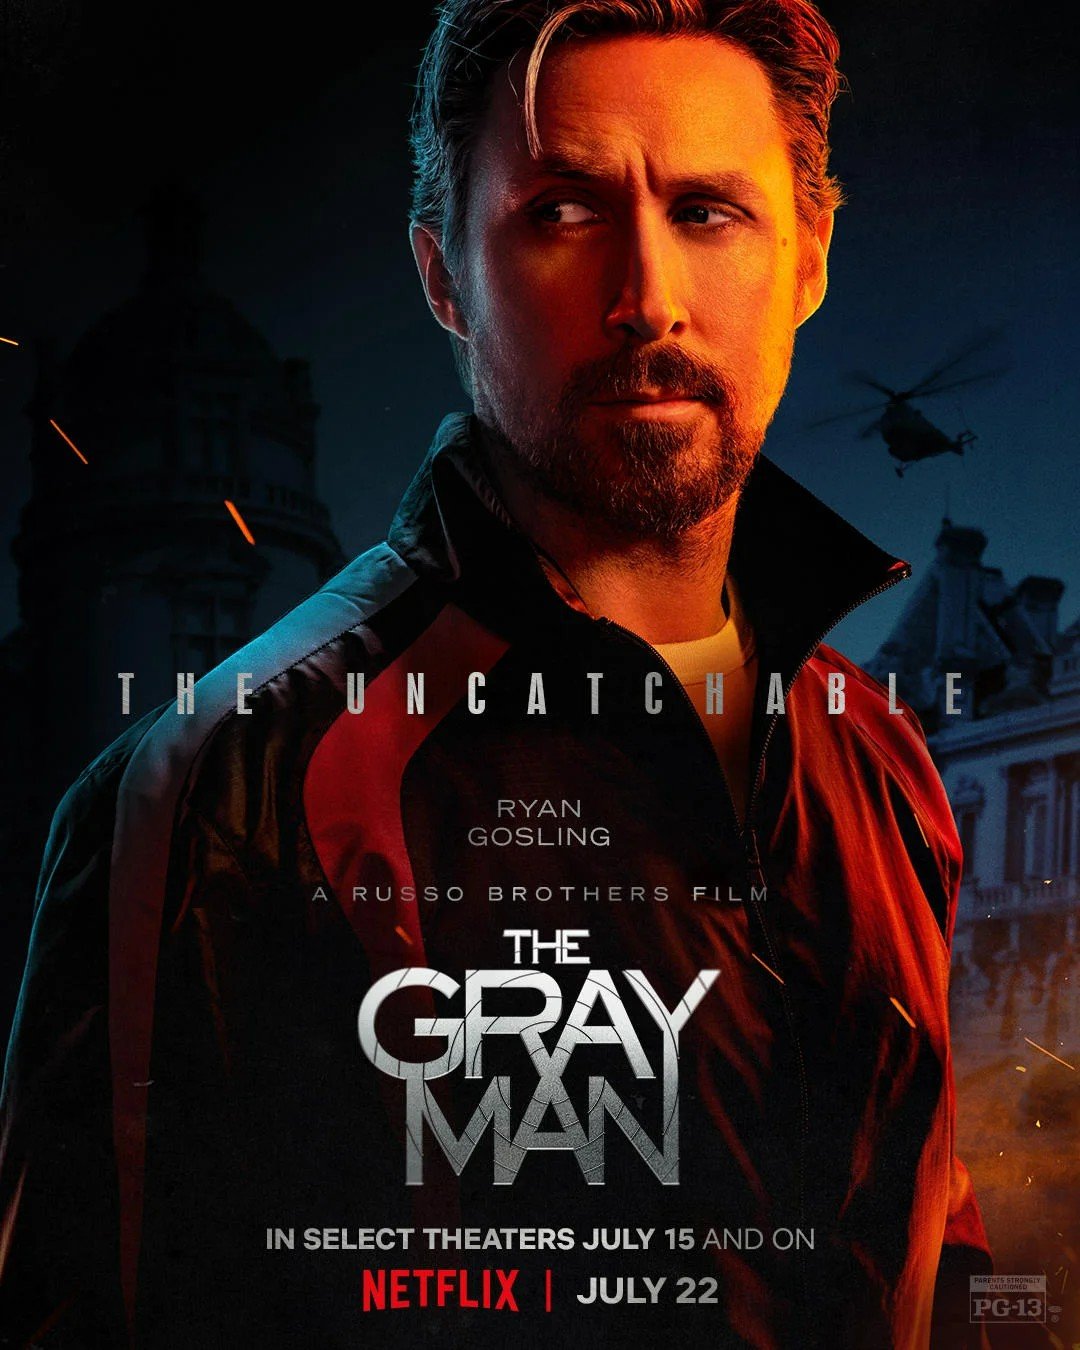 Netflix confirma Wagner Moura em 'The Gray Man', filme com Ryan